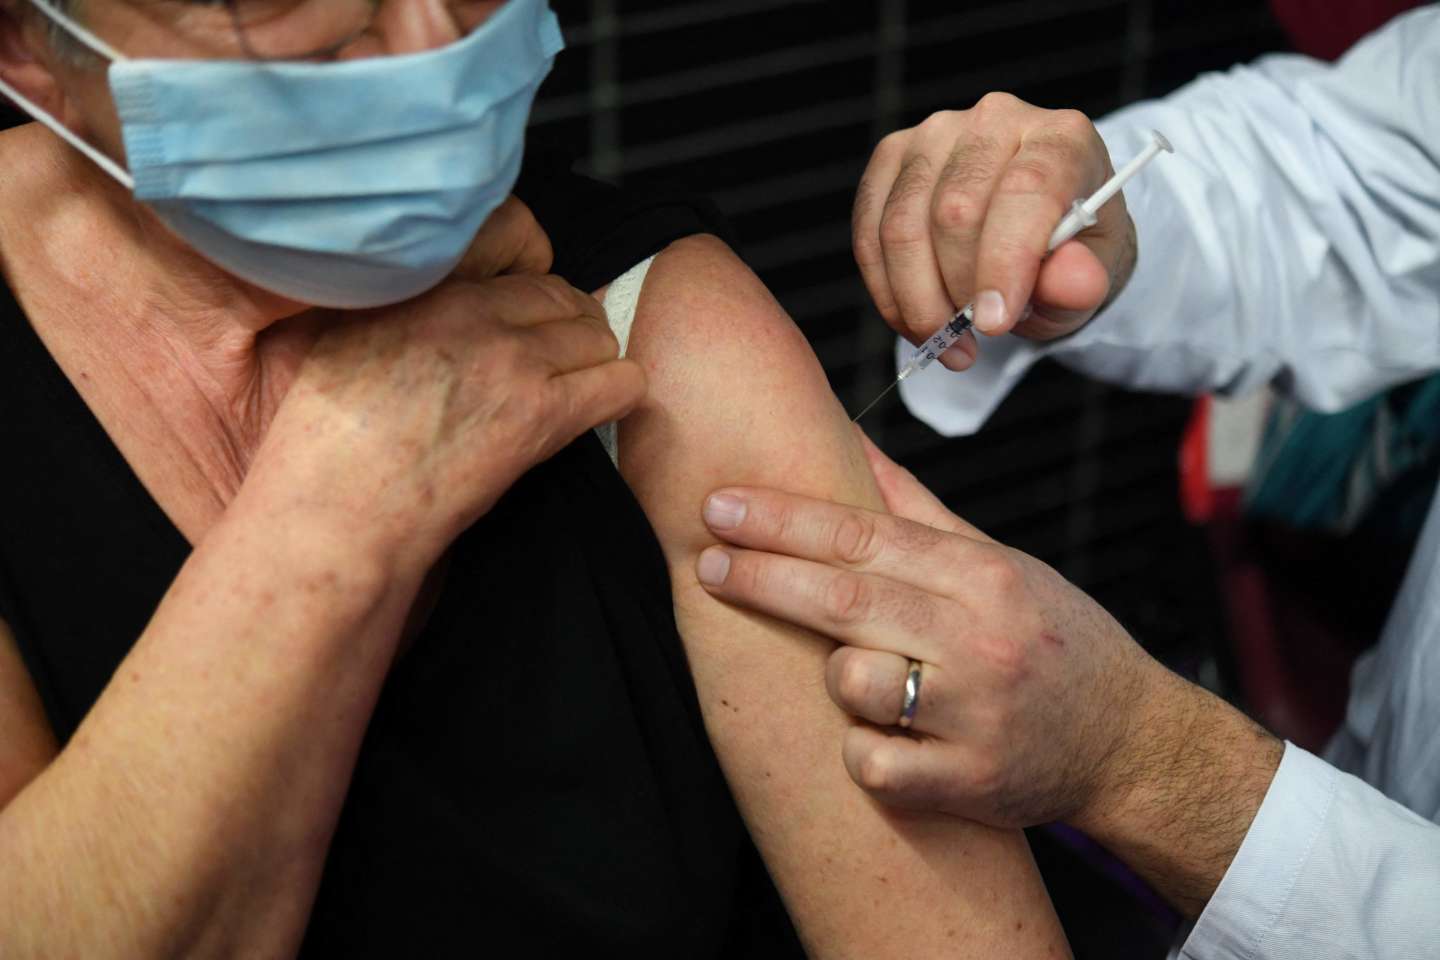 Le vaccin de Novavax pourrait provoquer des réactions allergiques sévères